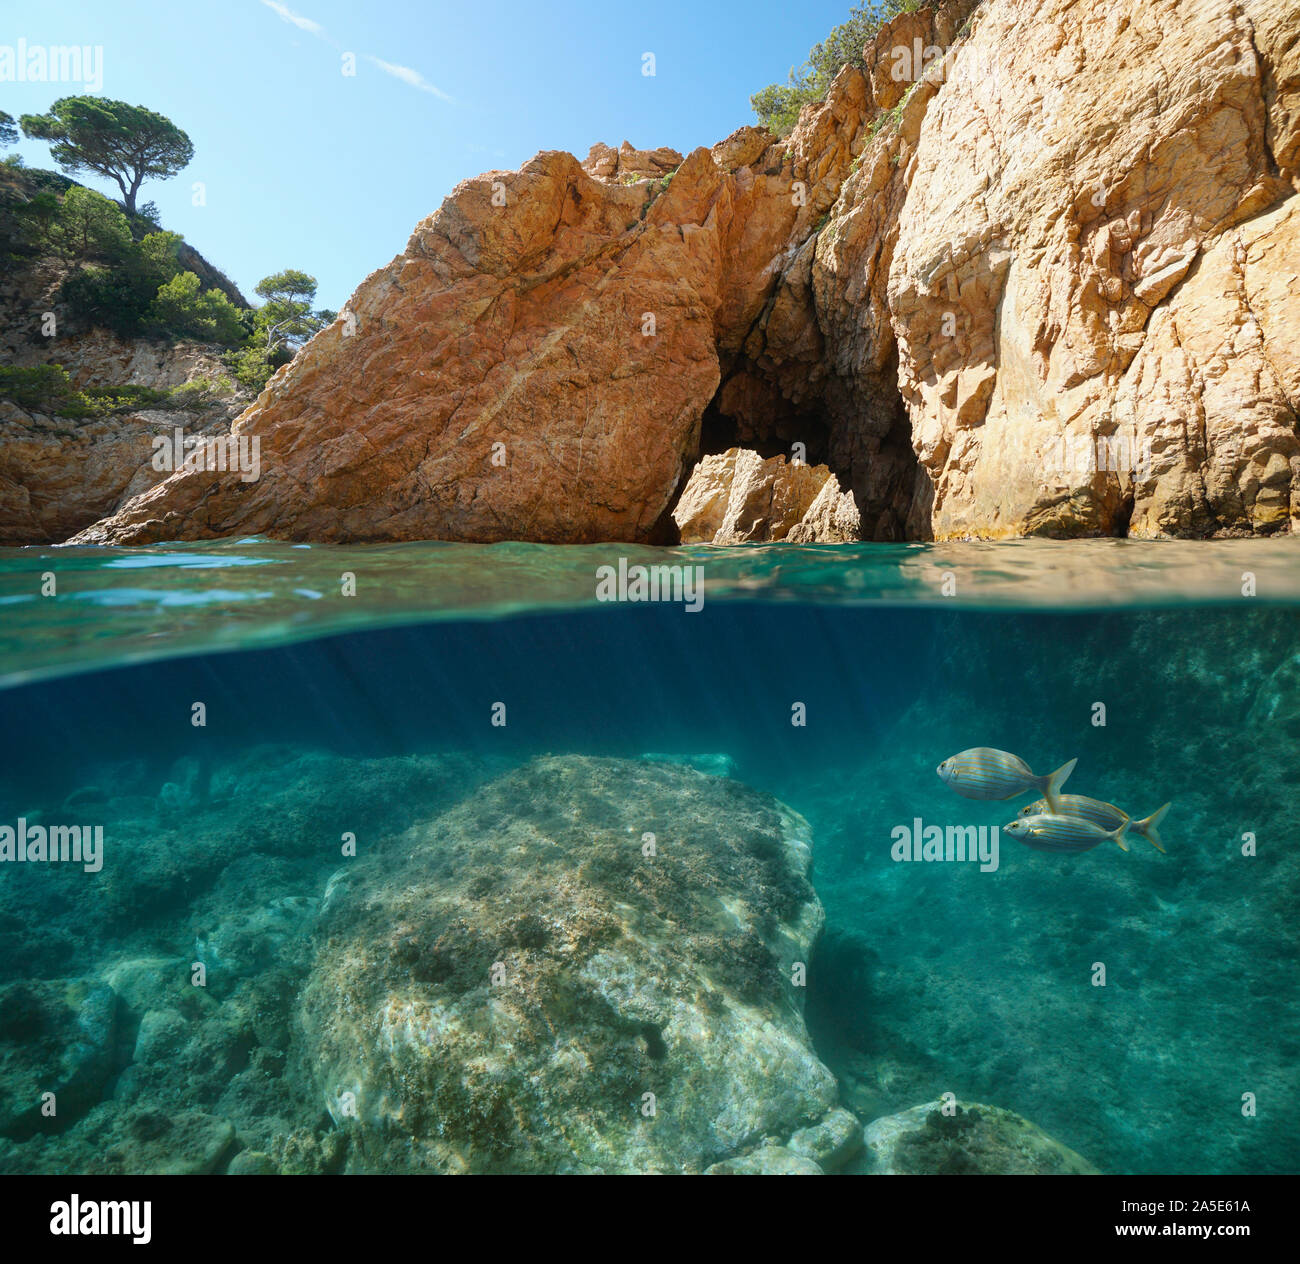 Costa rocciosa con arco naturale, vista suddivisa al di sopra e al di sotto di acqua, mare Mediterraneo, in Spagna, in Costa Brava Catalogna, Palamos, Cala Foradada Foto Stock